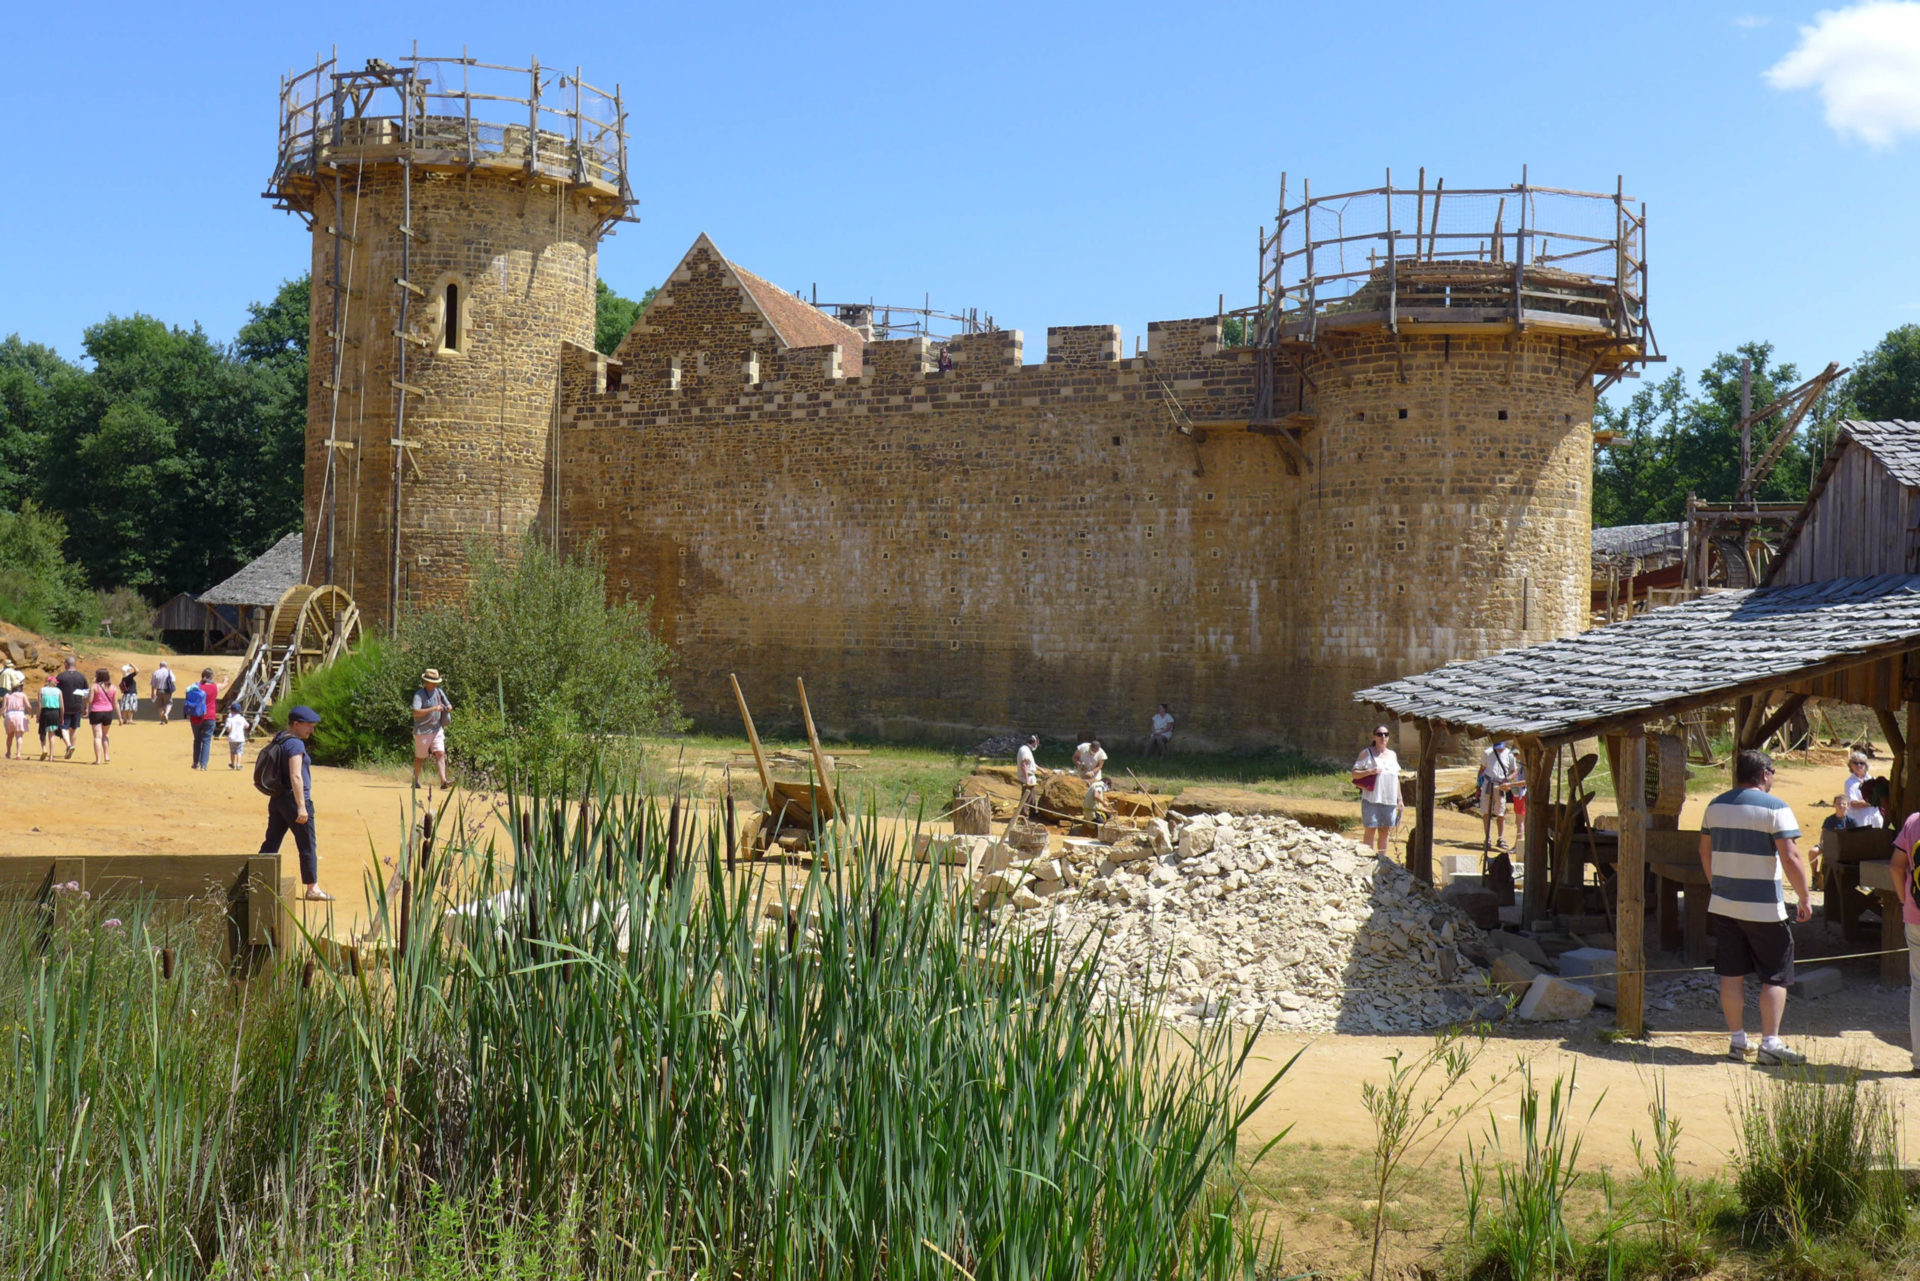 Visite du château médiéval de Guédelon, en construction depuis 20 ans